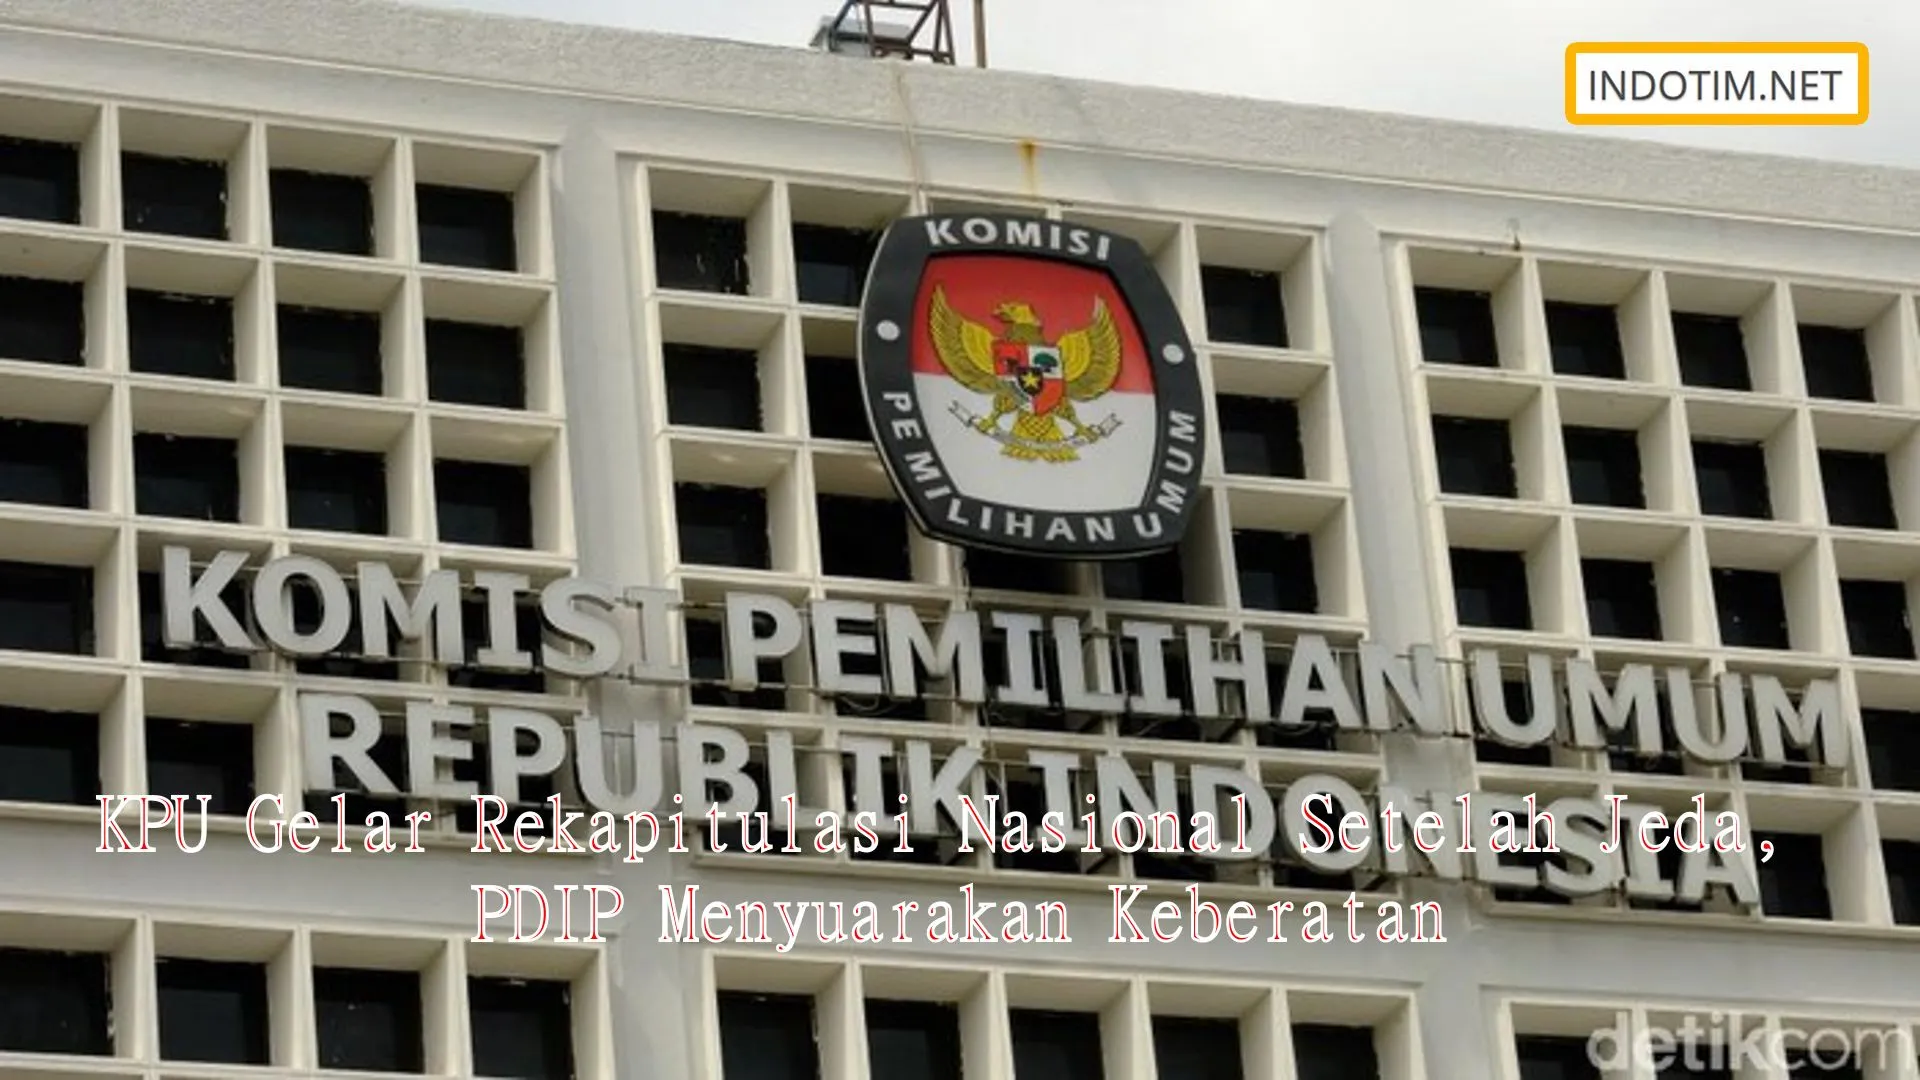 KPU Gelar Rekapitulasi Nasional Setelah Jeda, PDIP Menyuarakan Keberatan